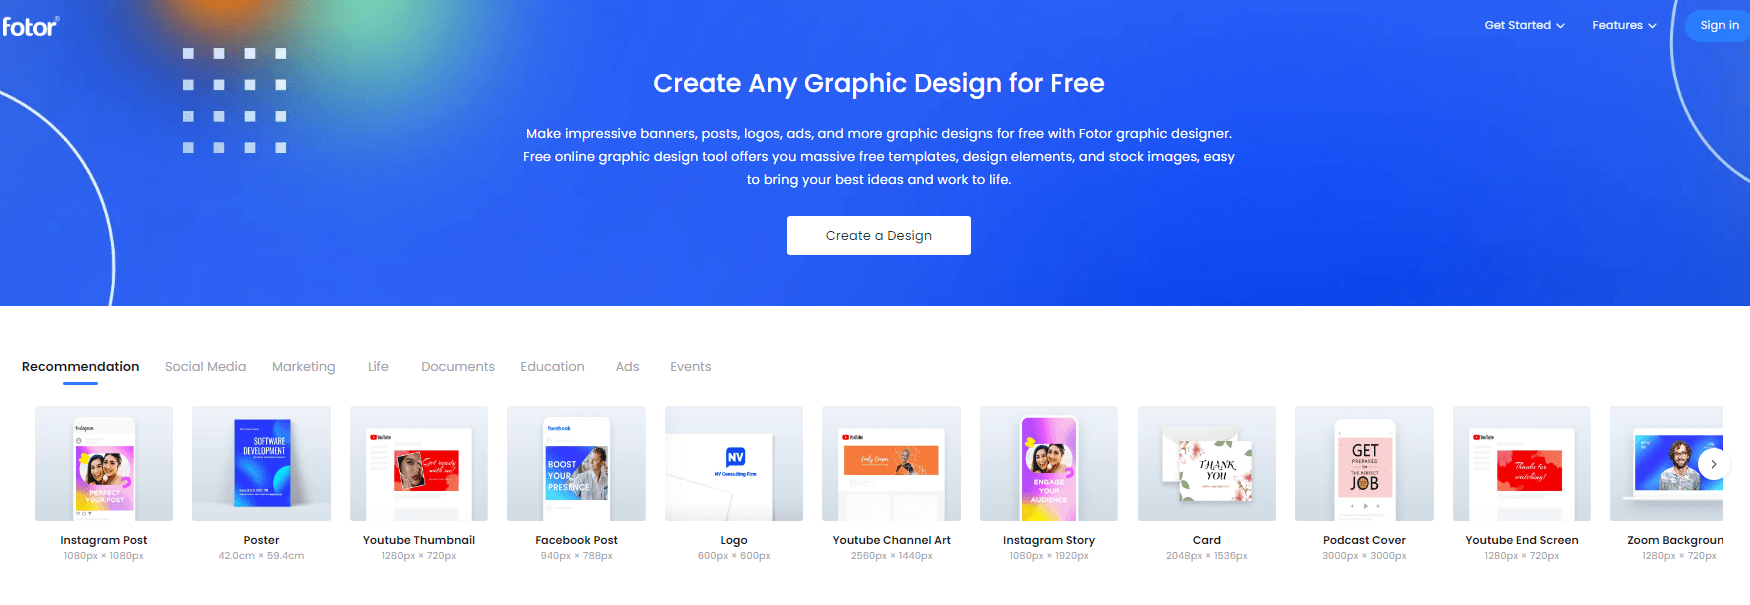 fotor best graphic design tool